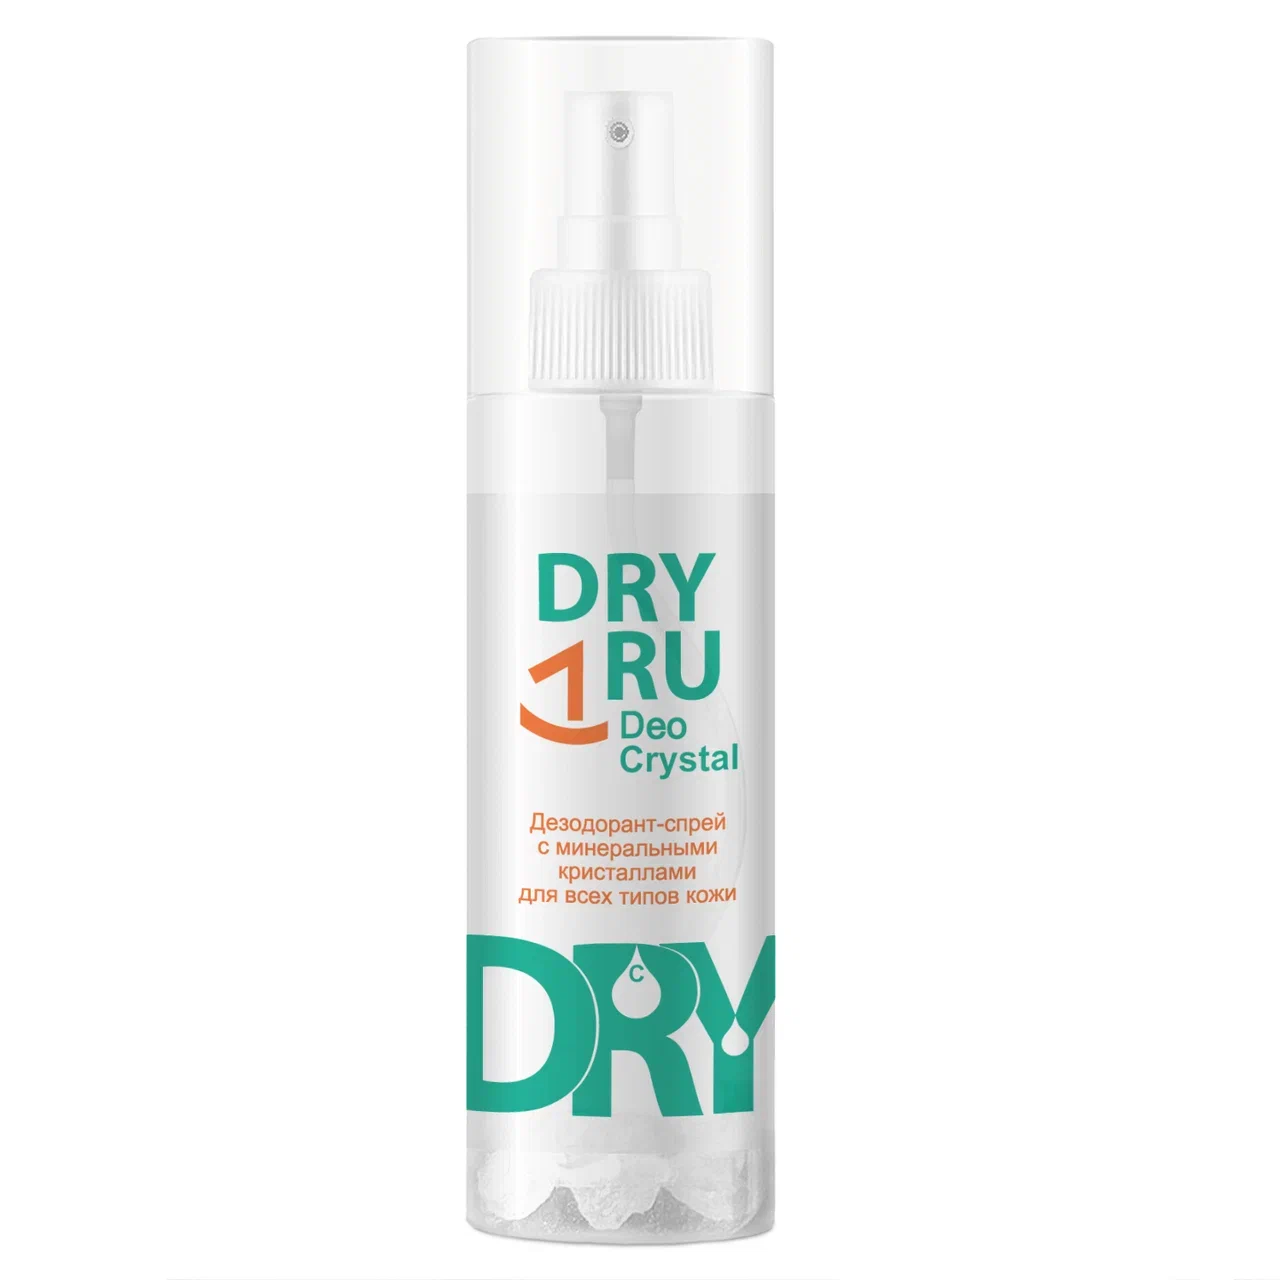 Дезодорант DRY RU Deo Crystal спрей, от пота и запаха, для подмышек, рук и ног 40 г